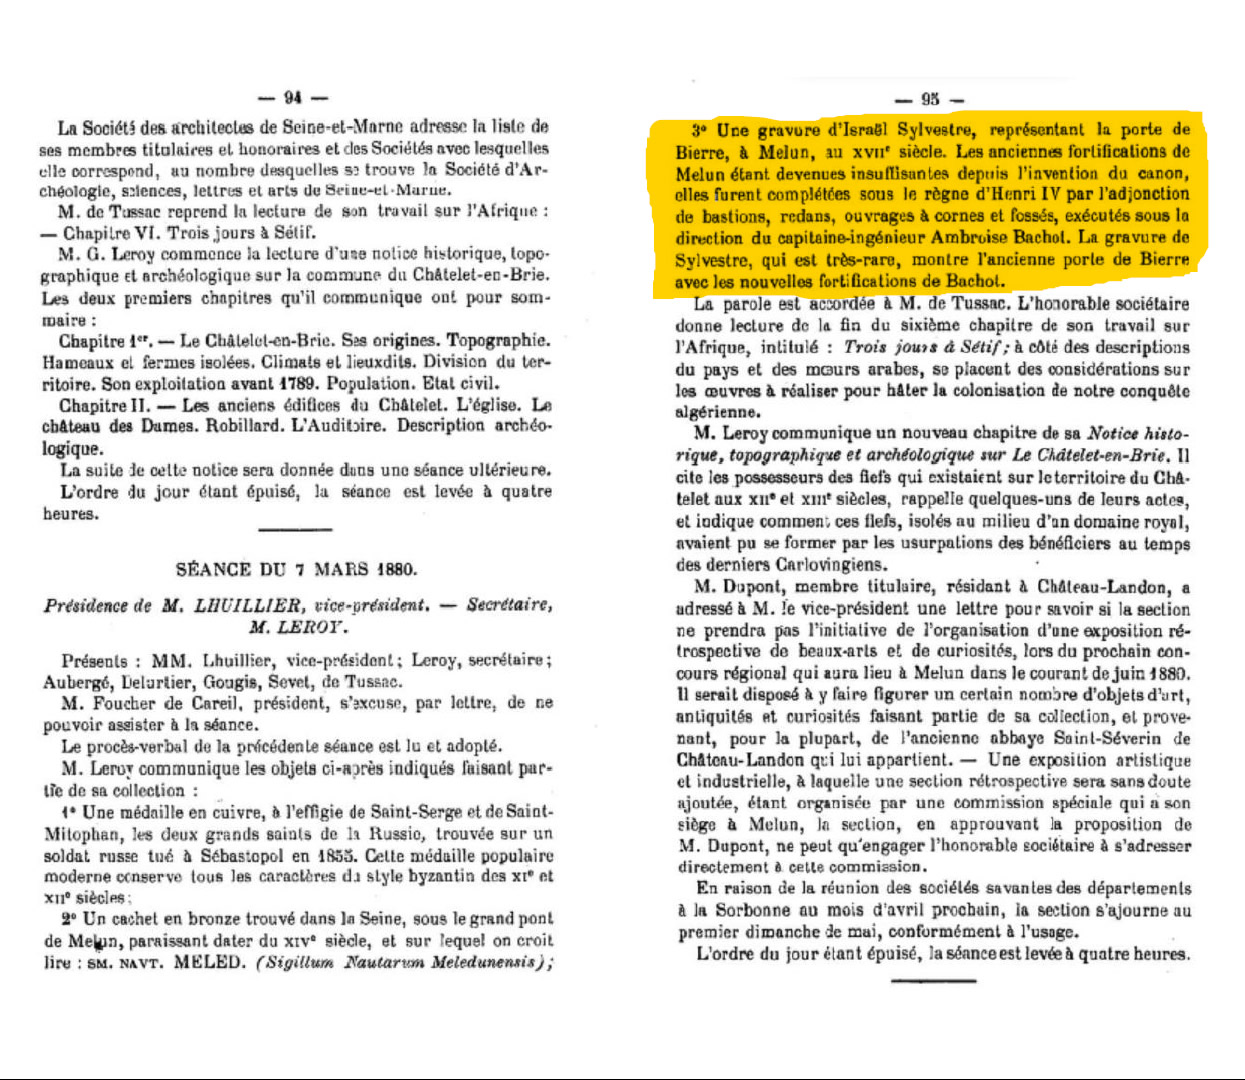 bulletin de la Société d’archéologie, sciences, lettres et arts de Seine-et-Marne, séance du 7 mars 1880